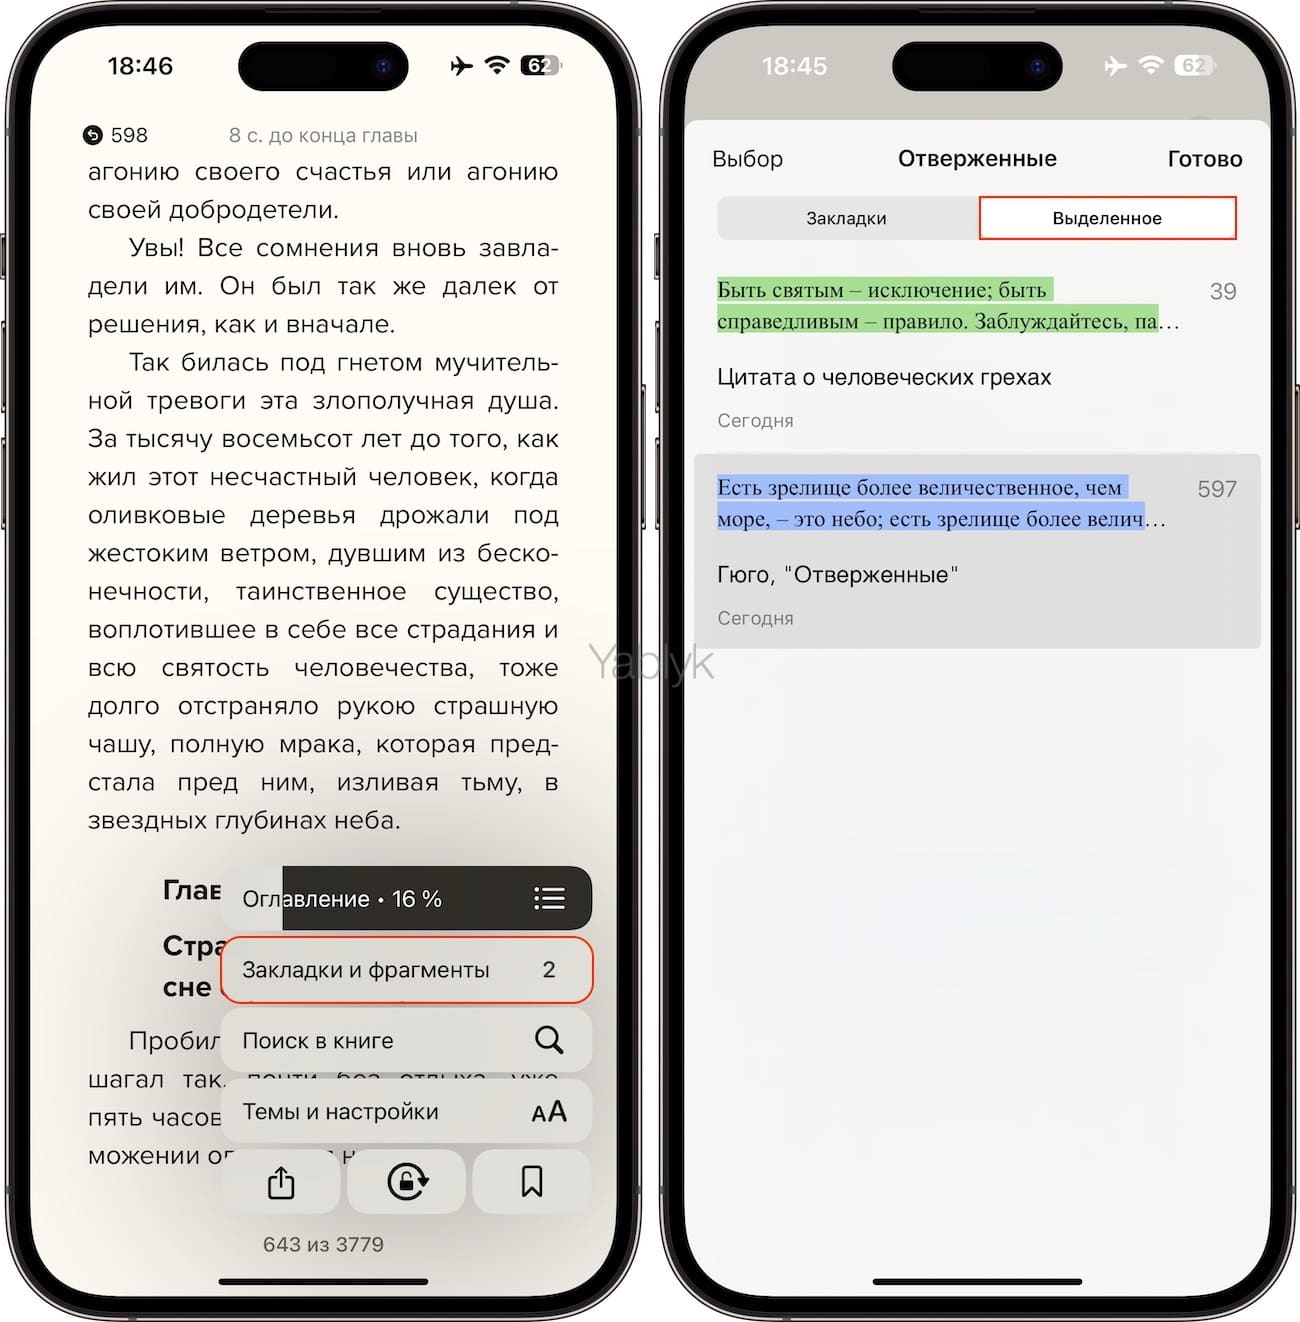 Как сохранять заметки в приложении "Книги" на iPhone и iPad